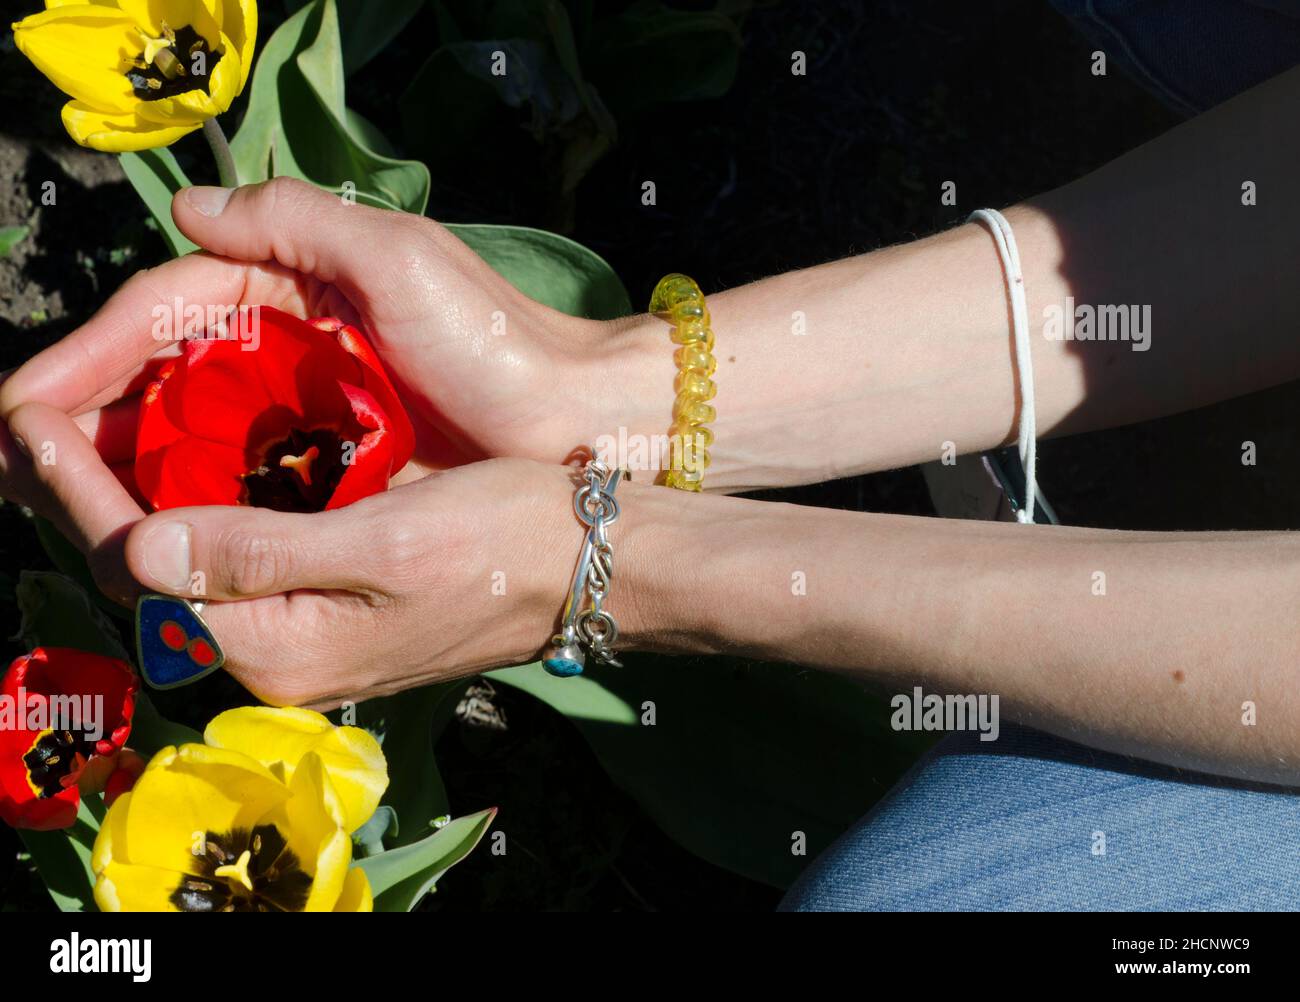 Zarte Hände nehmen eine rote Tulpe, mit gelben Tulpen um sie herum, Konzept von Delikatesse und Liebe Stockfoto